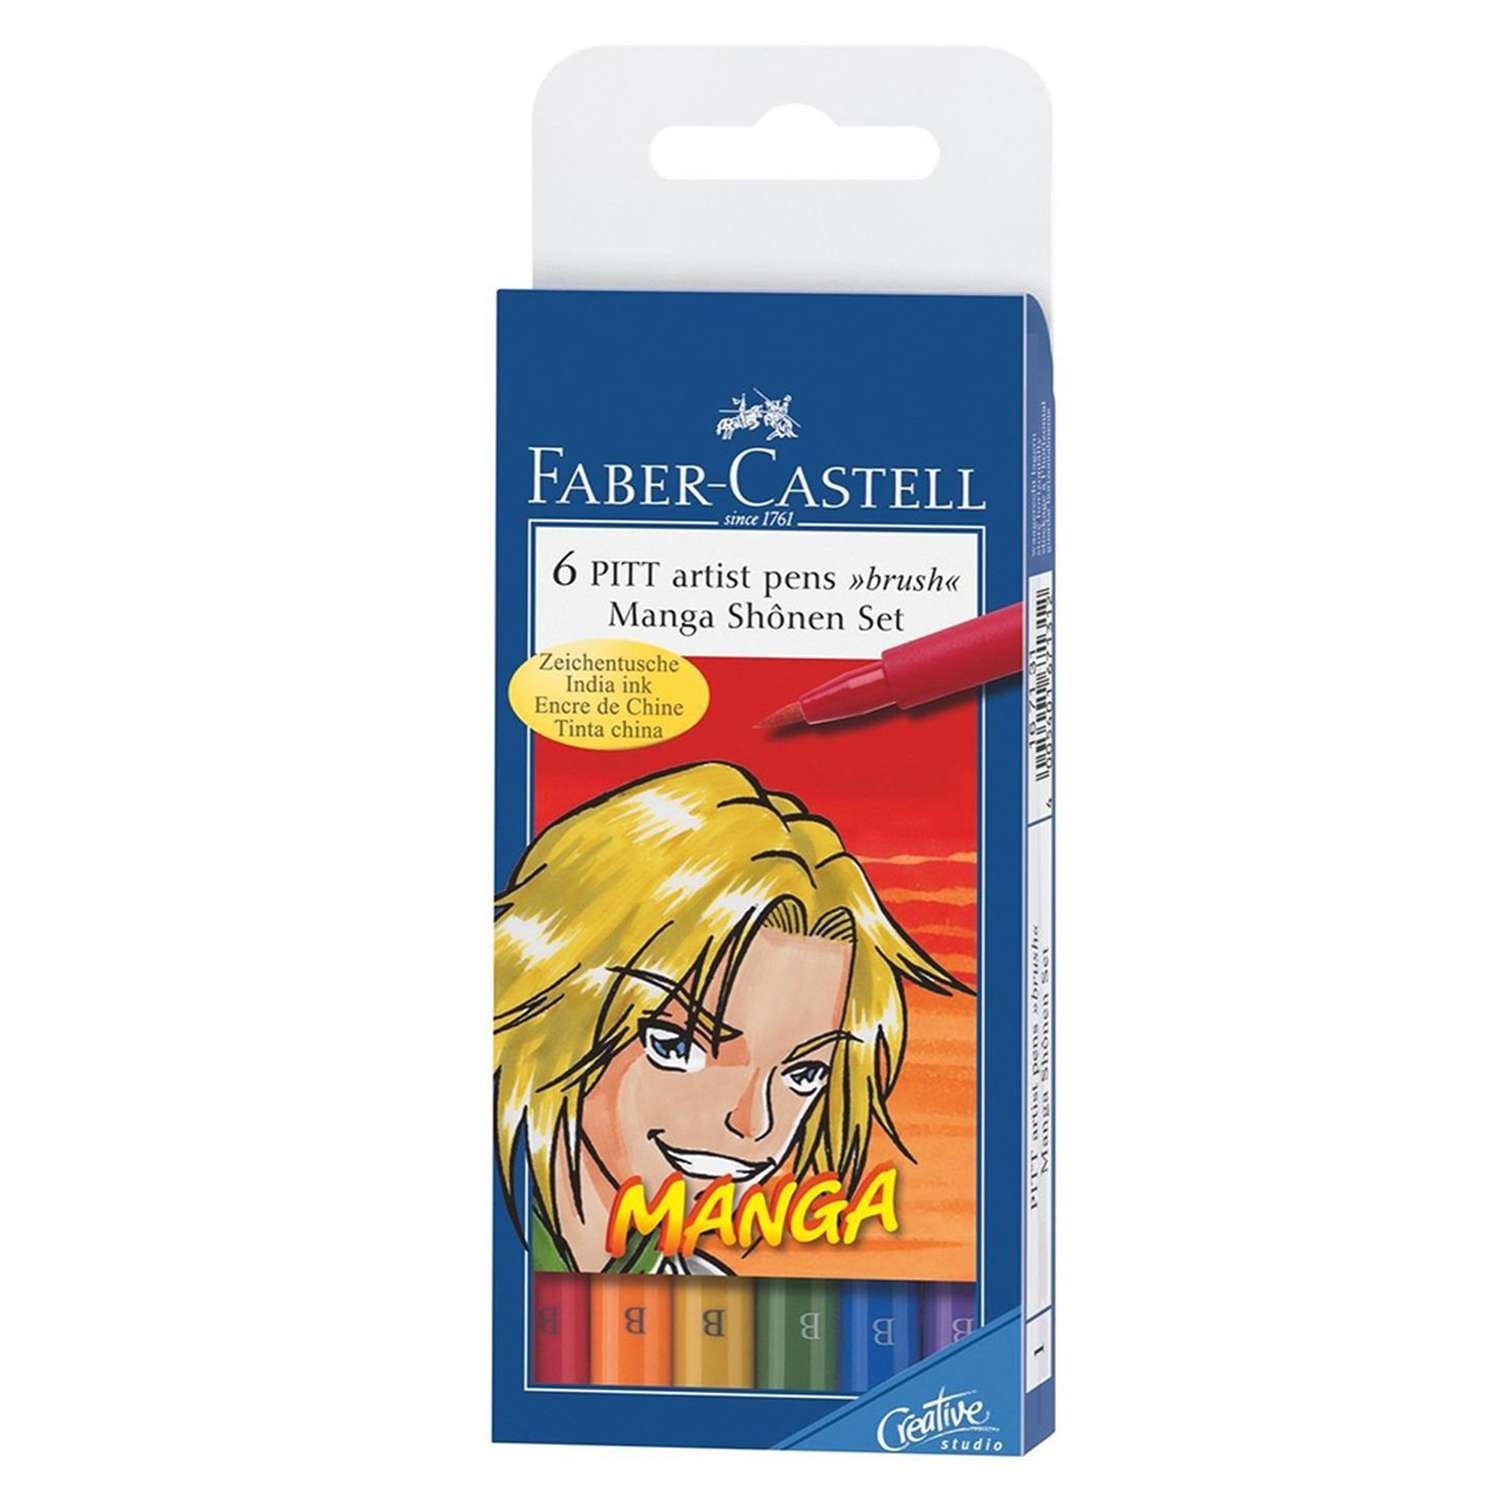 Капиллярные ручки Faber Castell MANGA набор цветов в футляре 6 шт. - фото 1